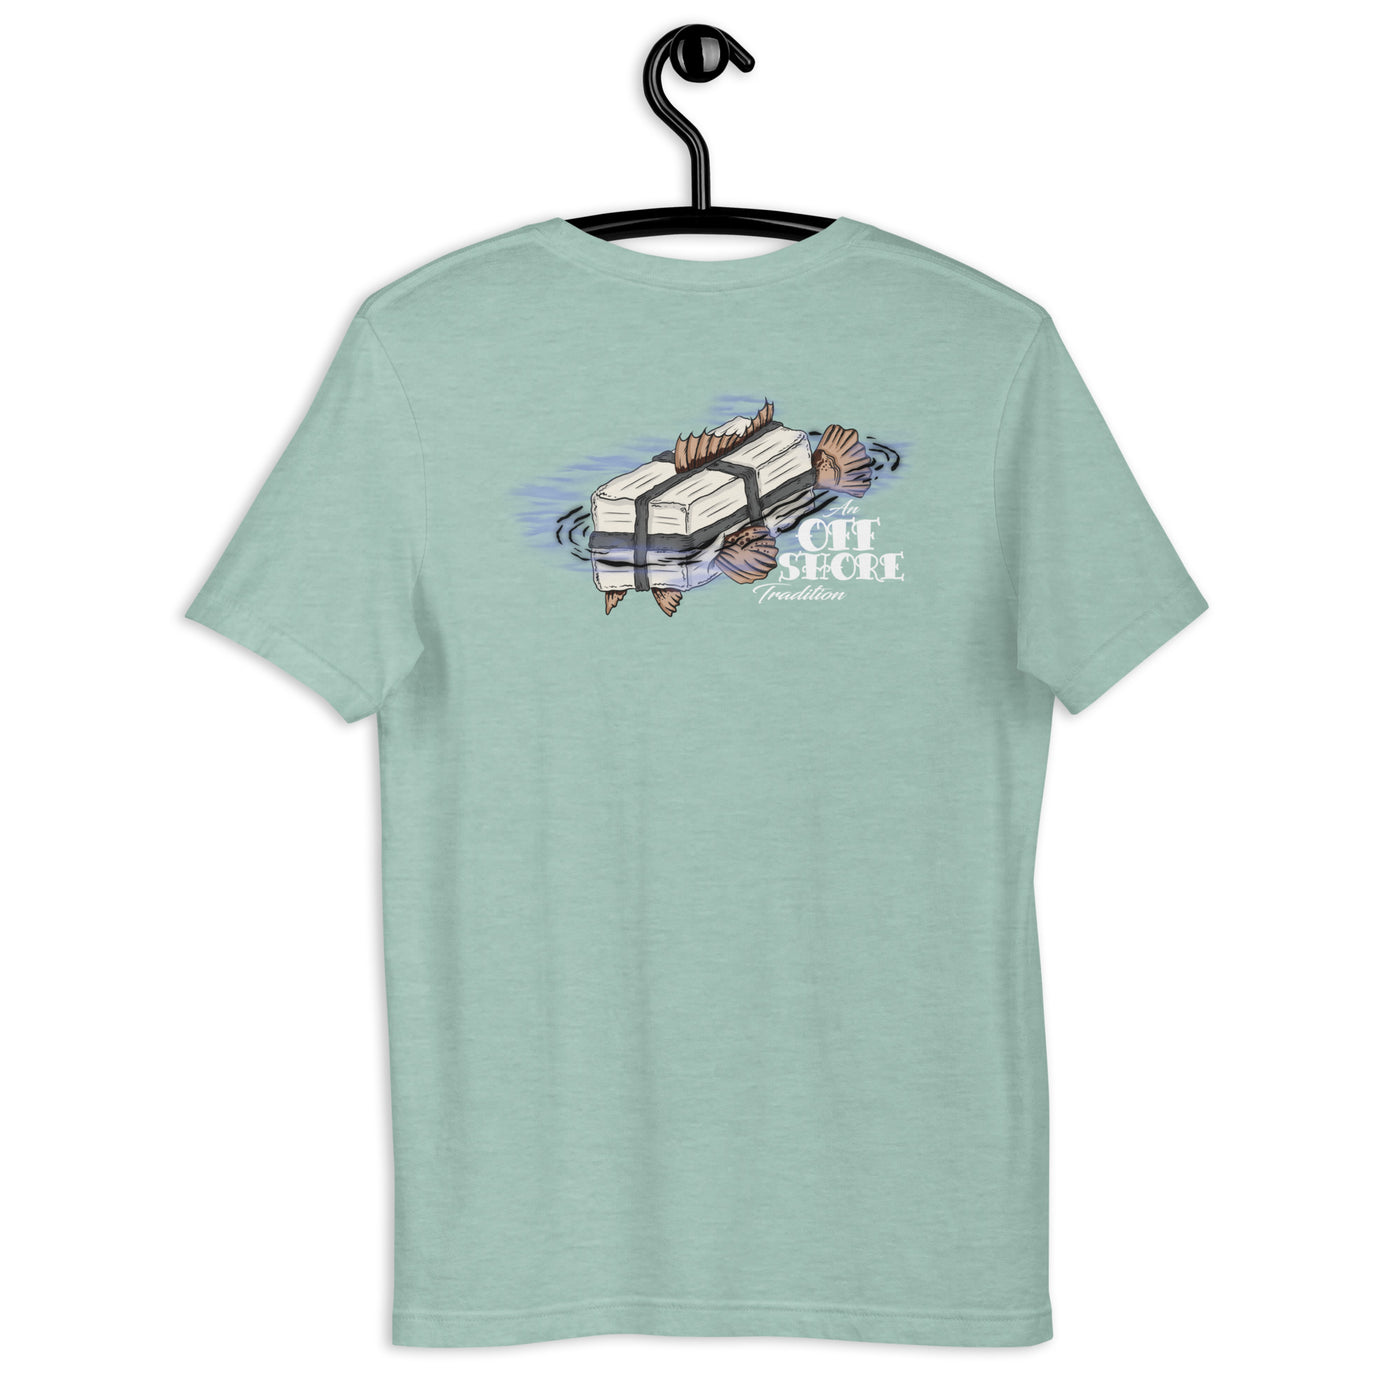 Square Grouper t-shirt